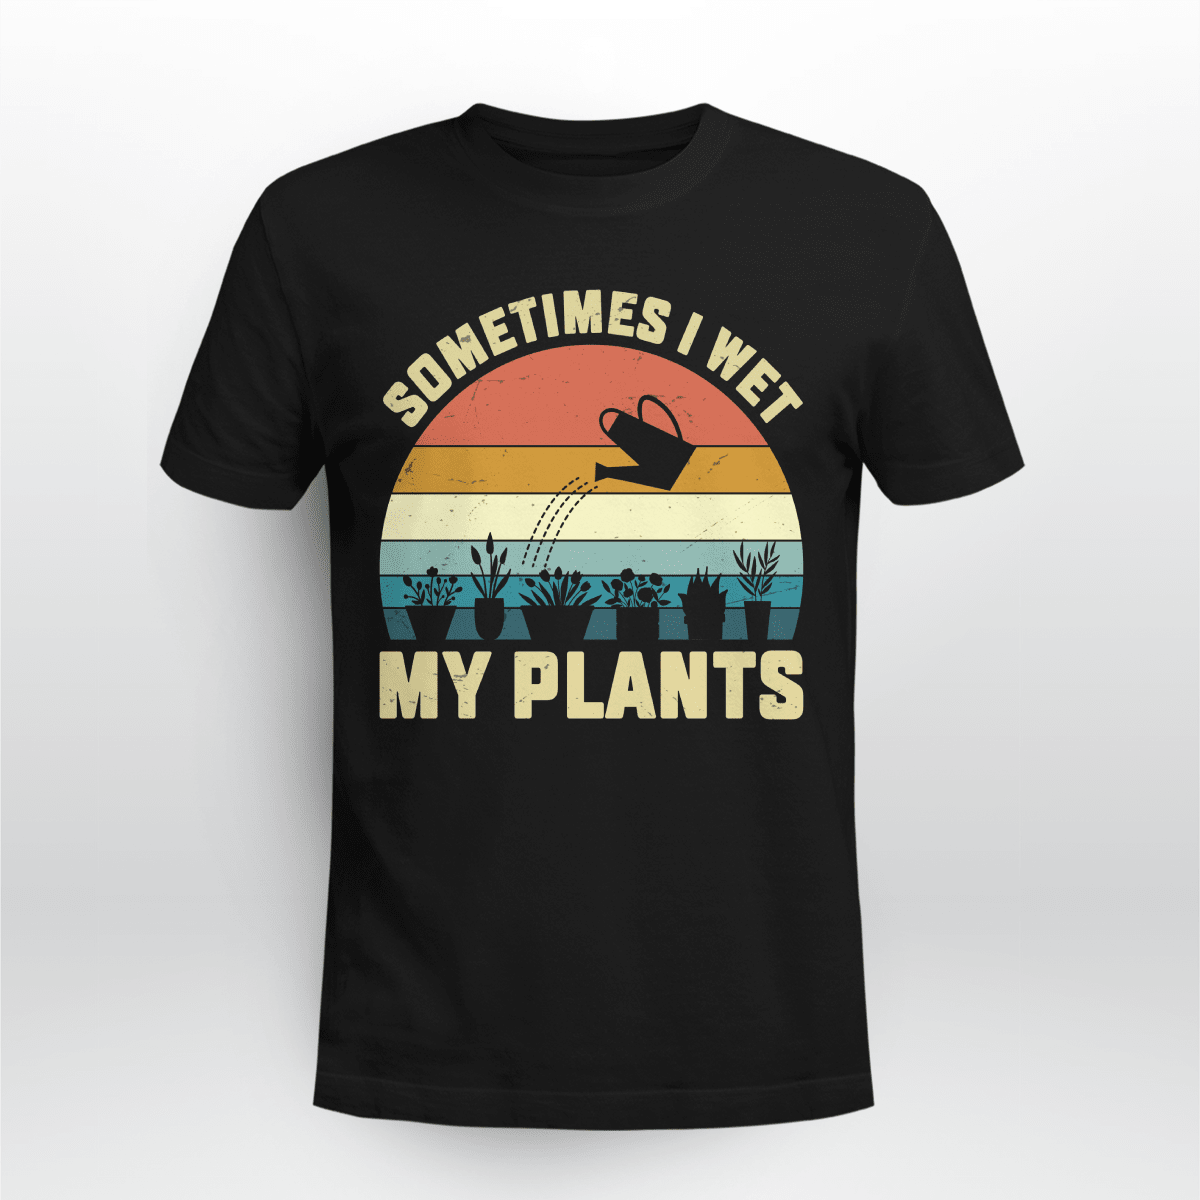 Sometimes I Wet My Plants | Funny Gardening T-shirt